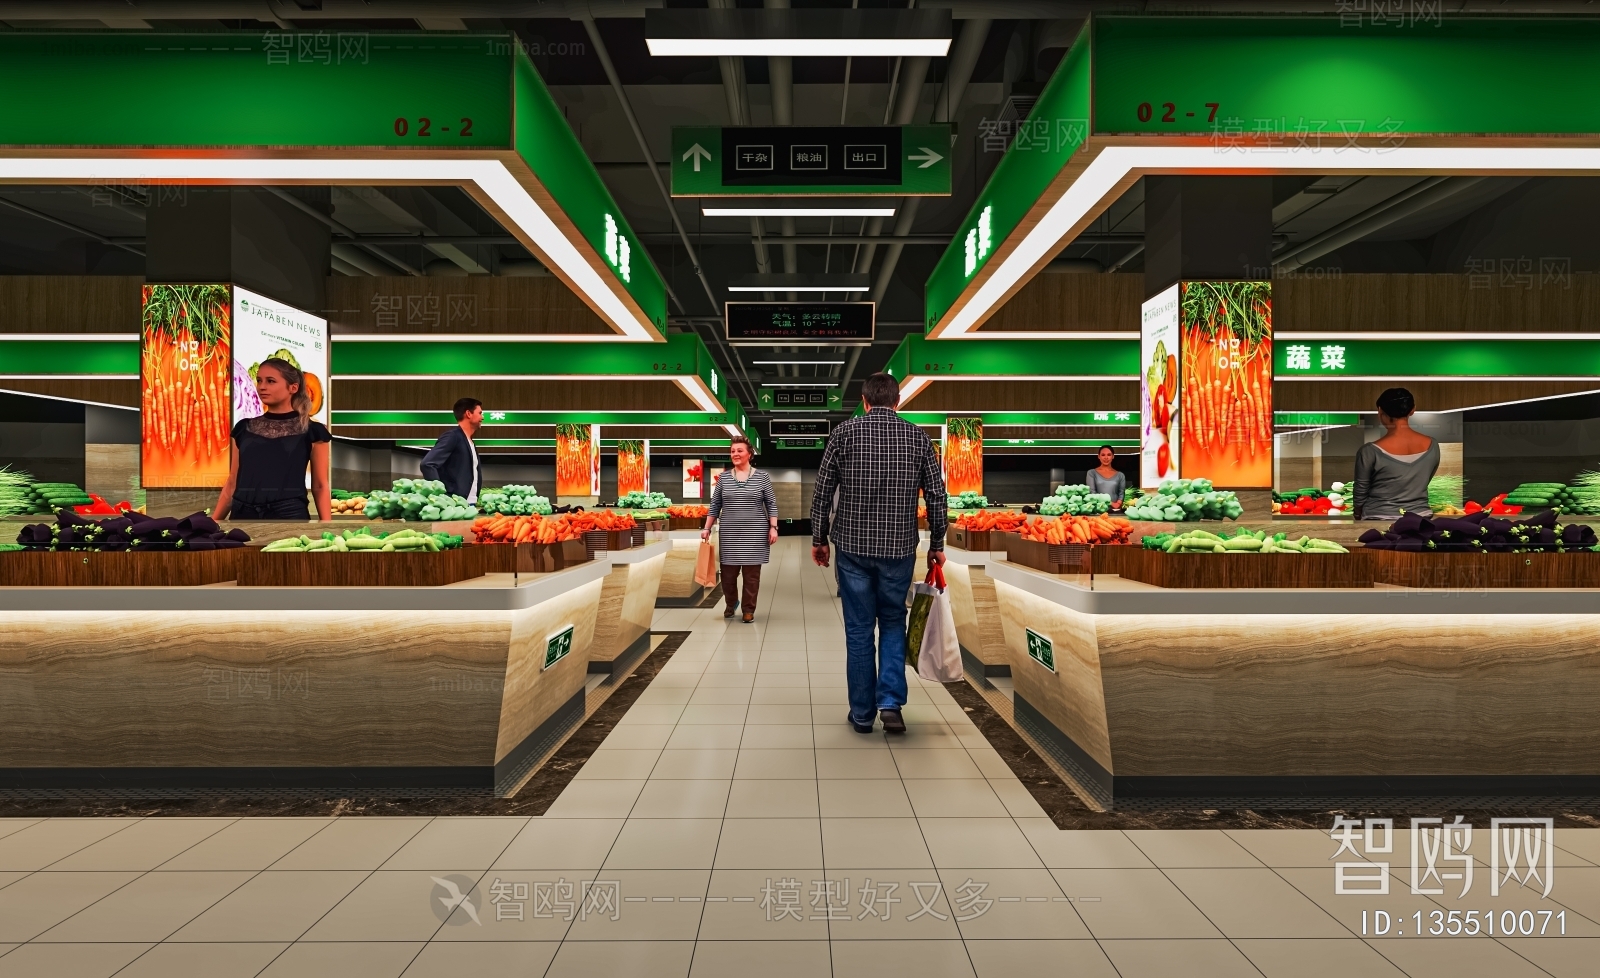 现代超市蔬菜区